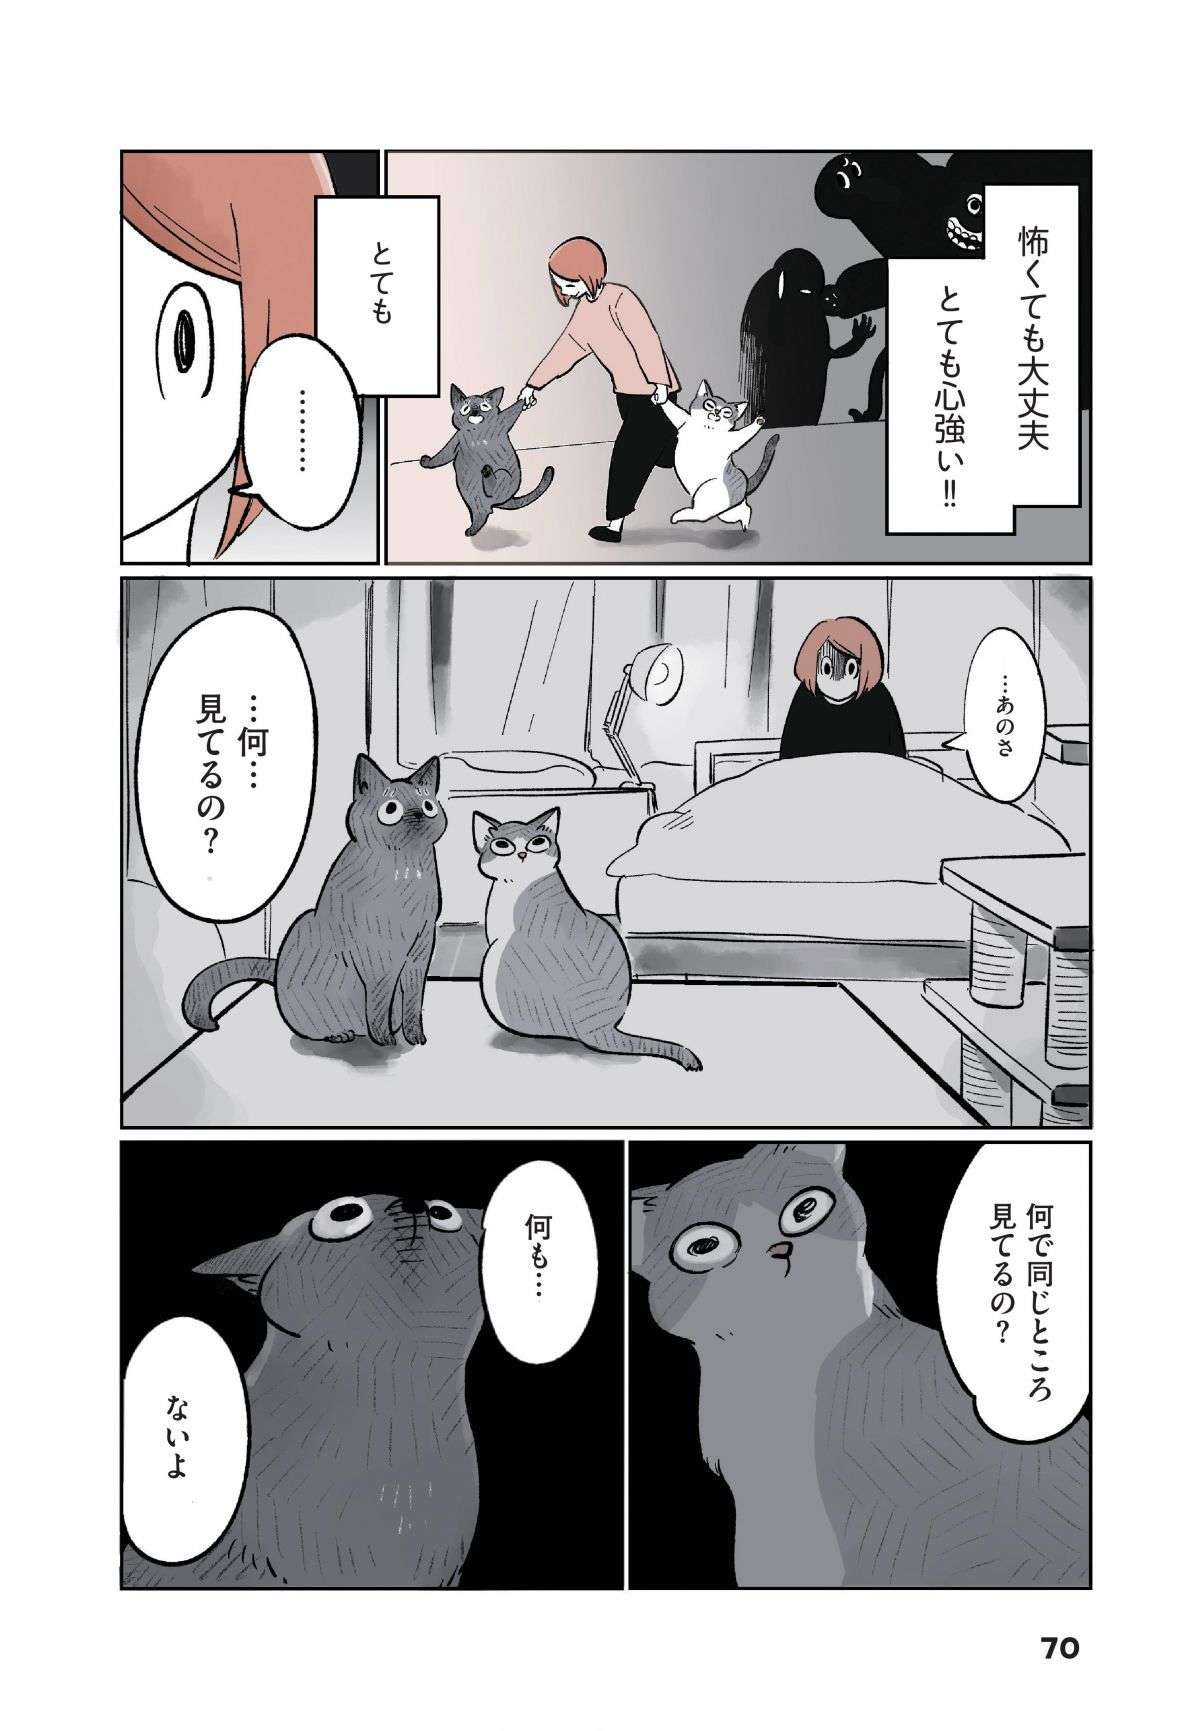 夜中、布団の上に「何か」が乗っている!? 猫とホラーの新ジャンル「怖かわいい」とは／こねこのドレイ koneko_dorei7-7.jpg